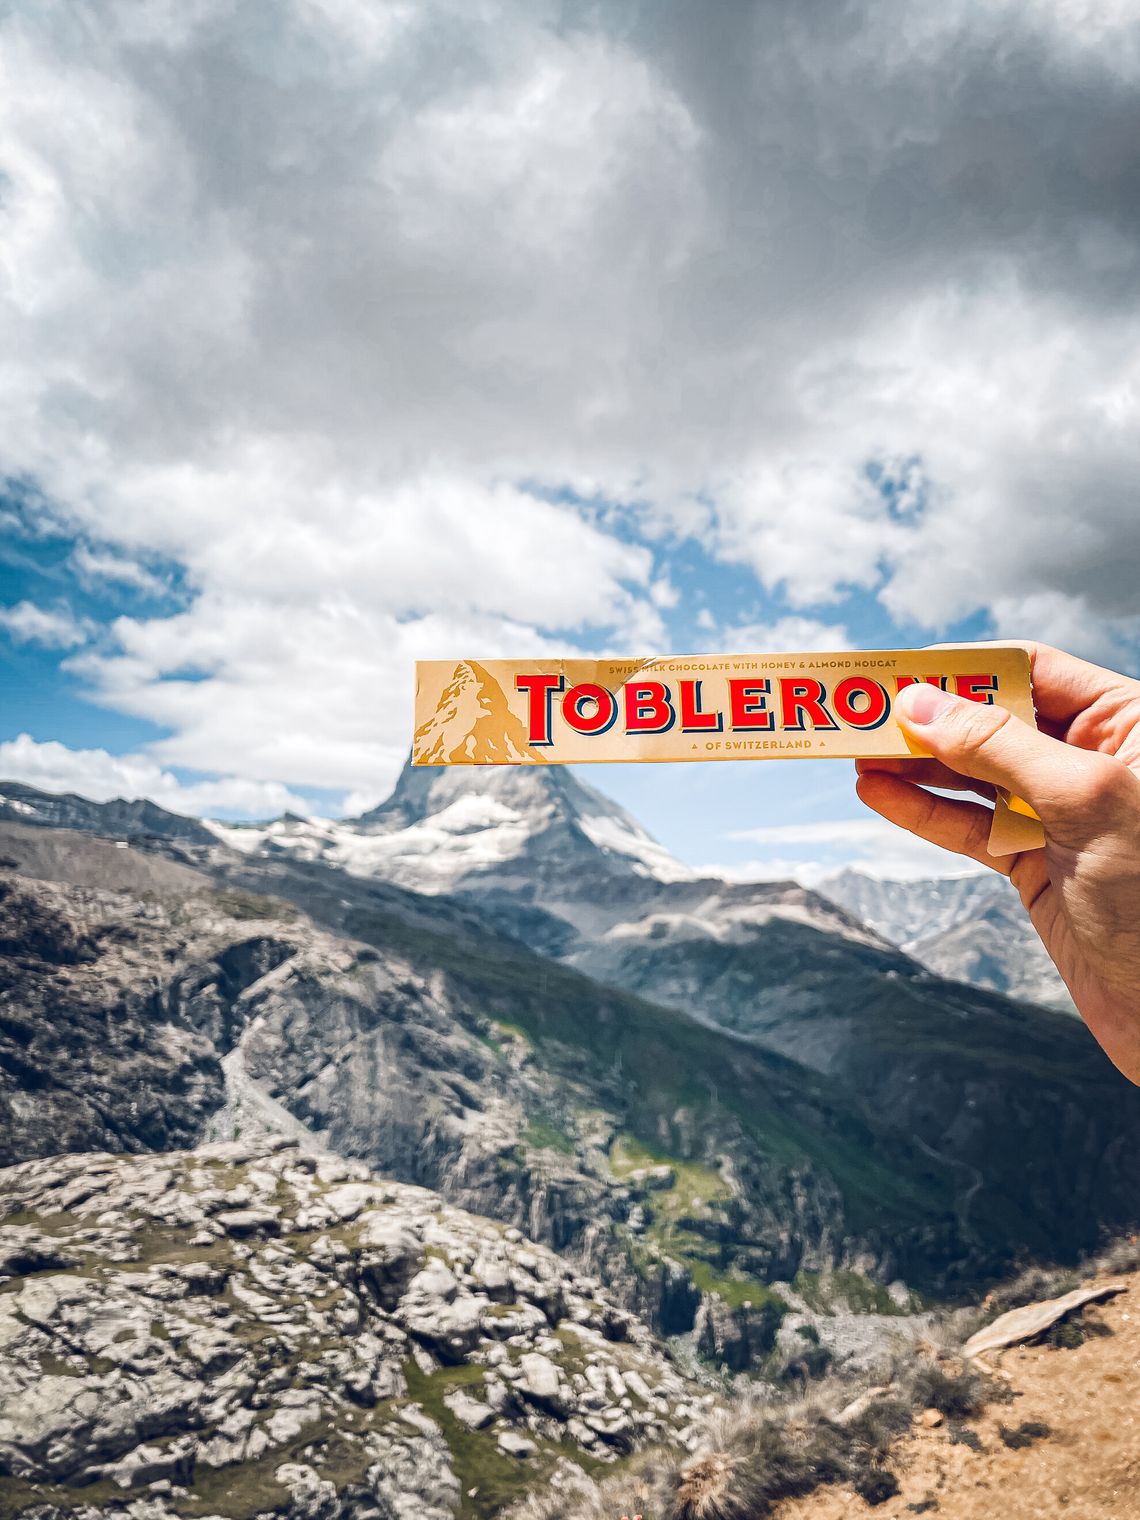 Toblerone packaging photo with the Matterhorn from Rotenboden, Gornergrat, Zermatt, Switzerland